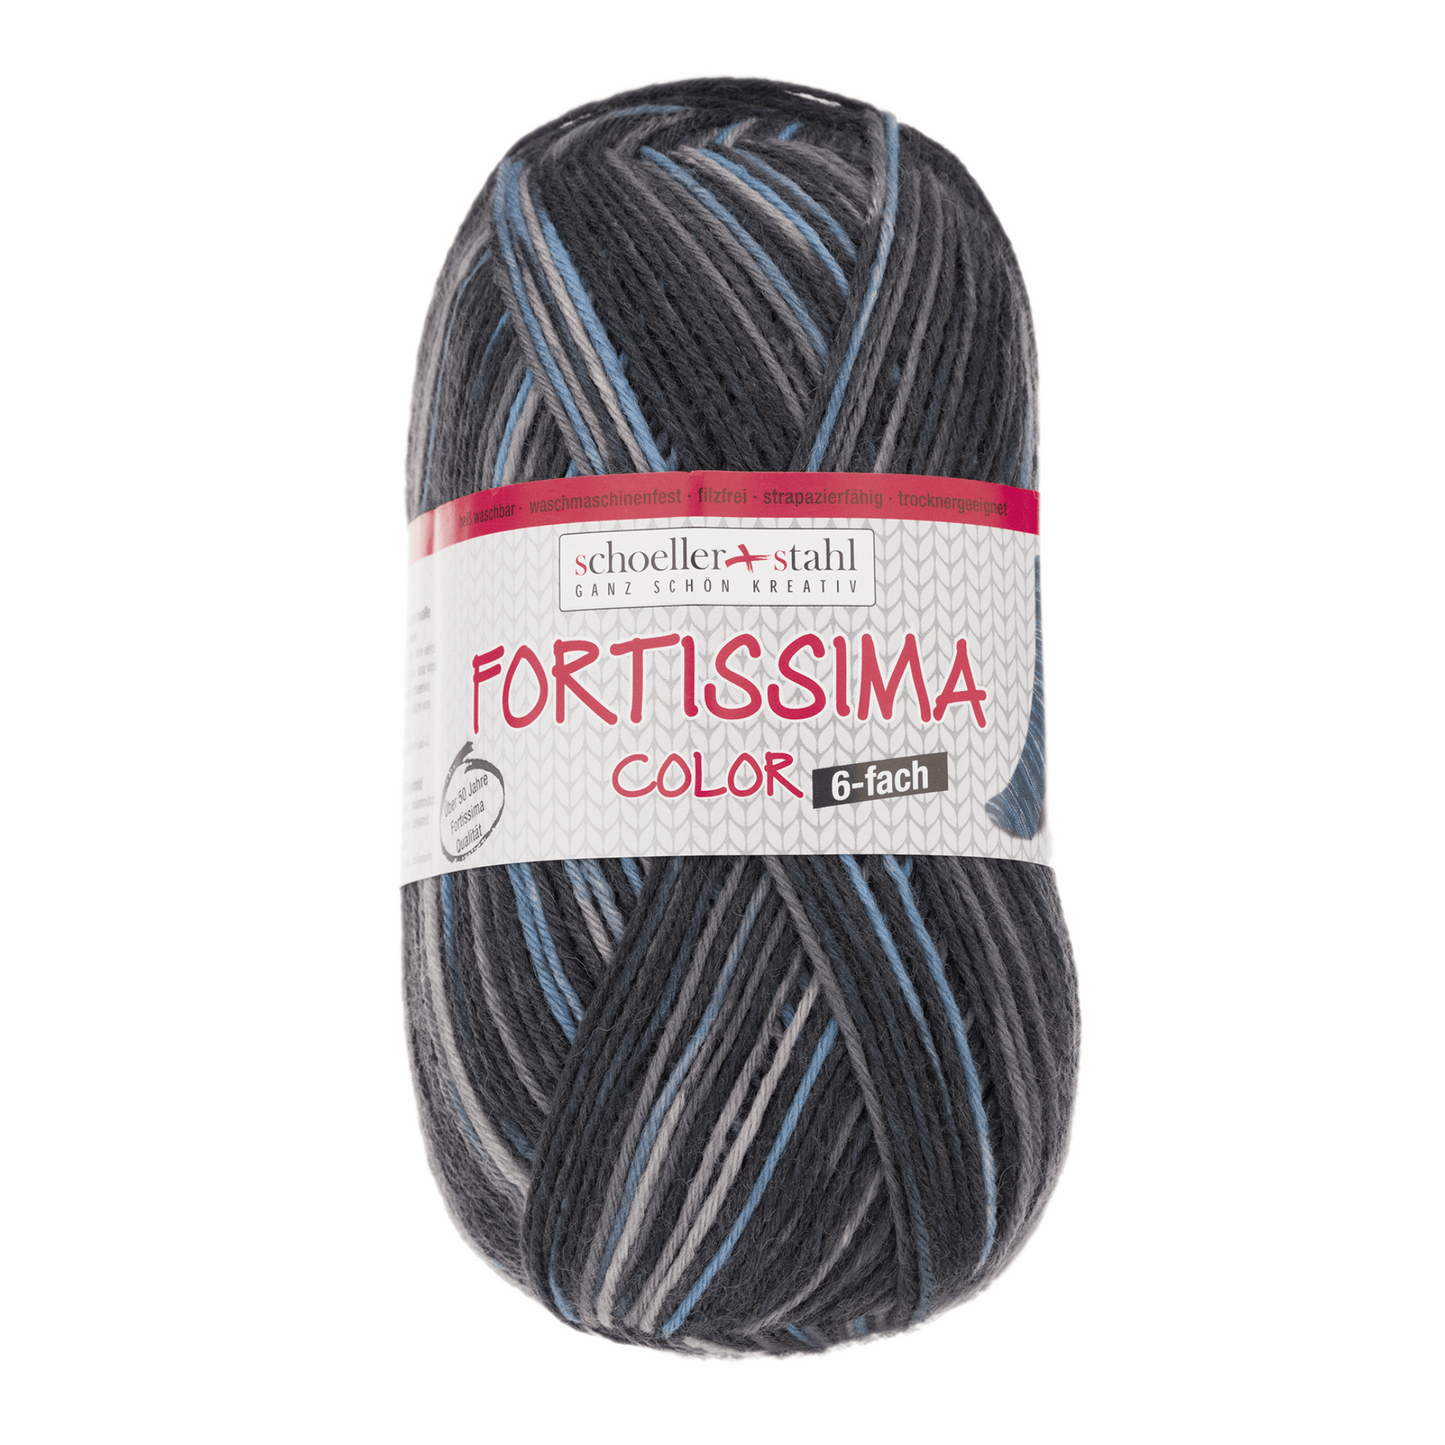 Fortissima 6fädig 150g color, 90008, Farbe 165, asphalt